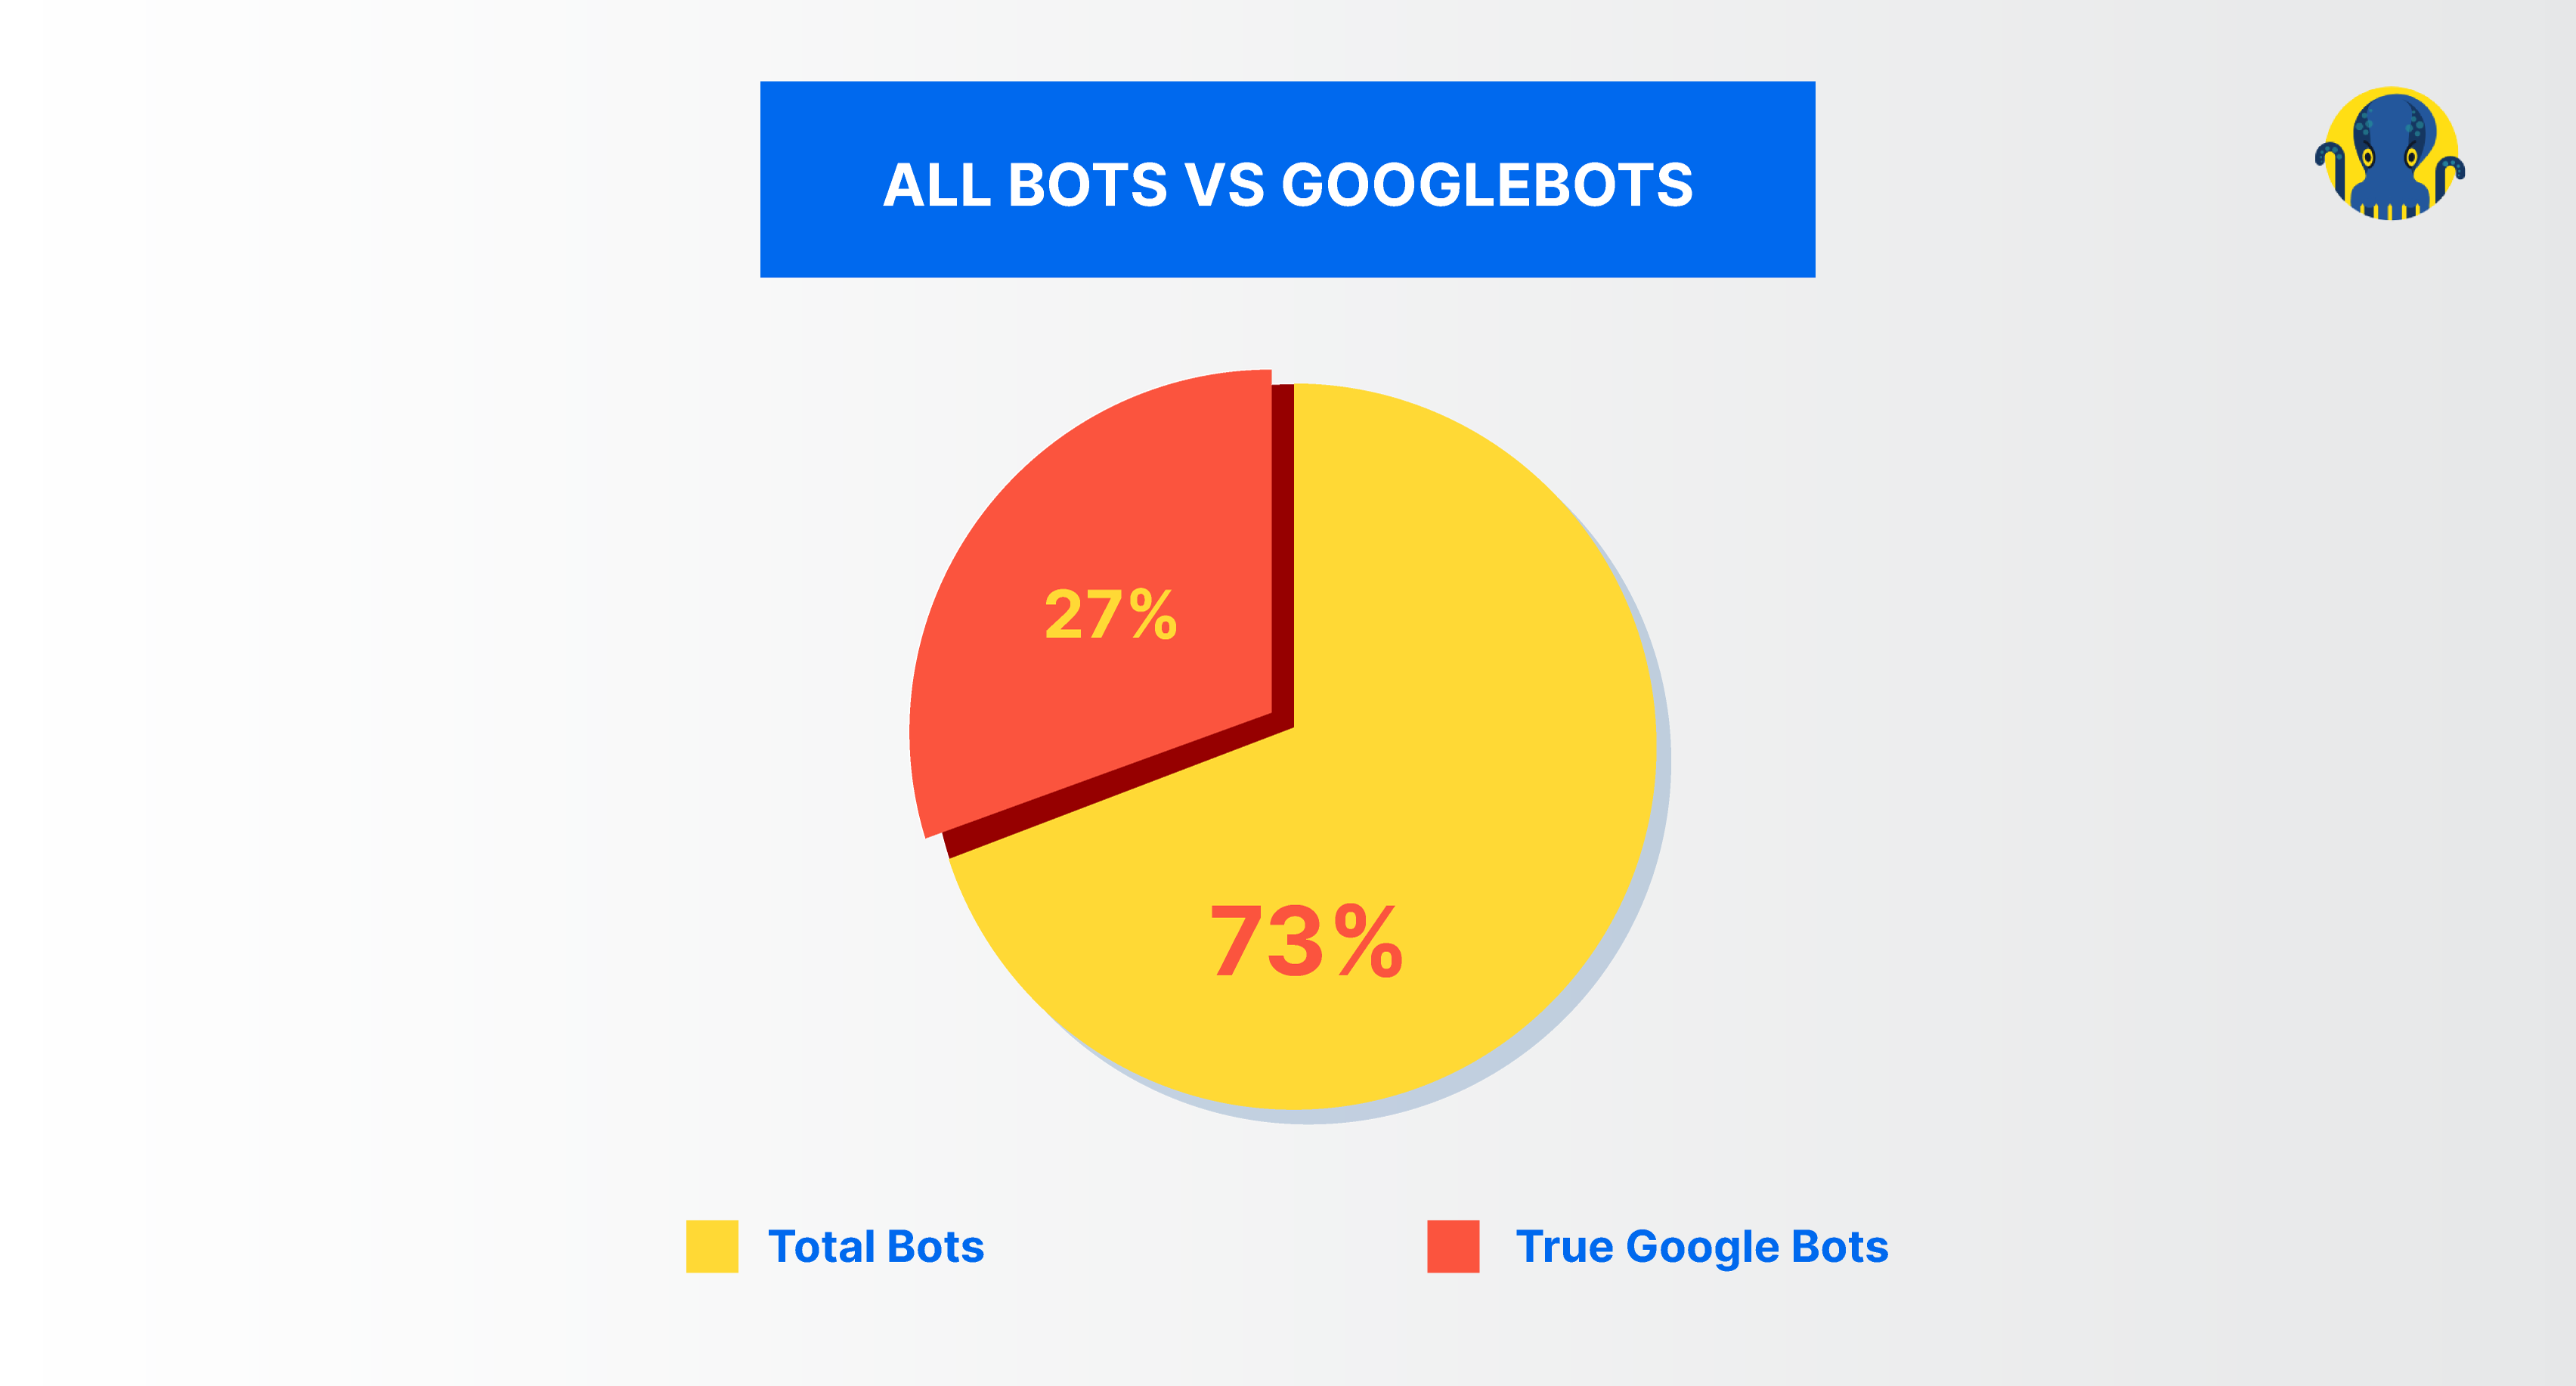 All bots vs googlebots